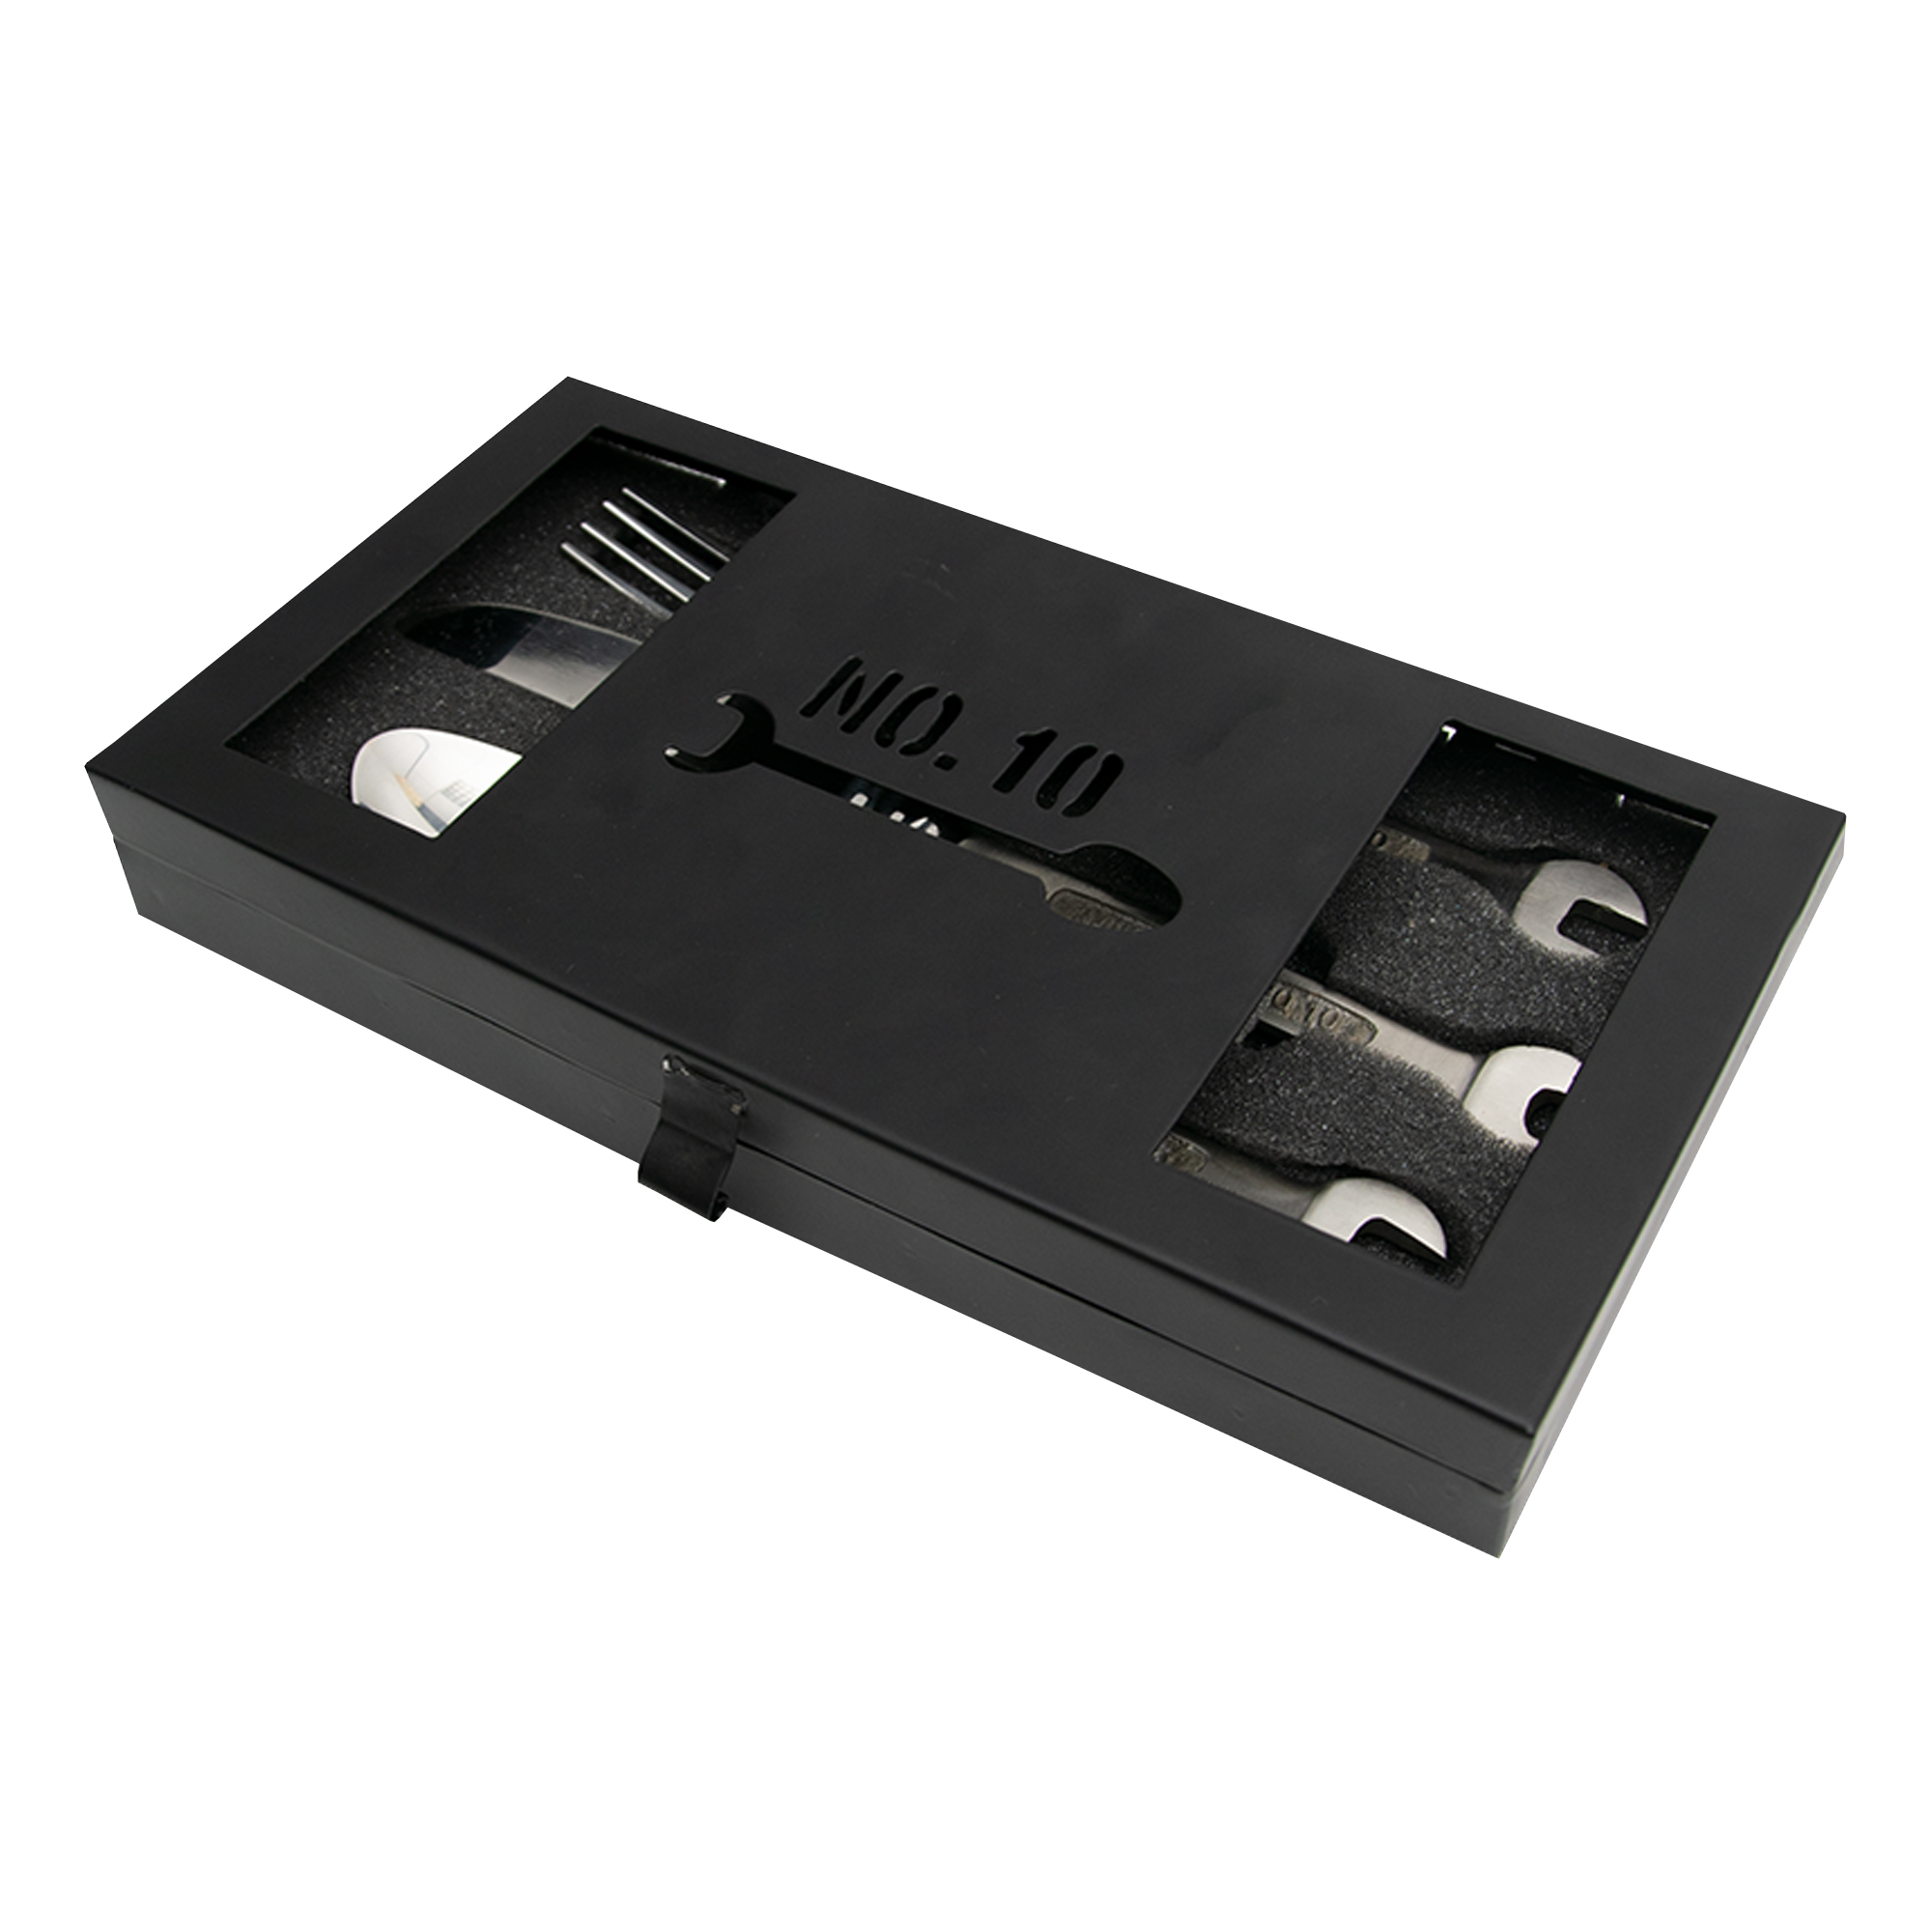 Besteck Set - Schraubenschlüssel 2168-MZ - 5